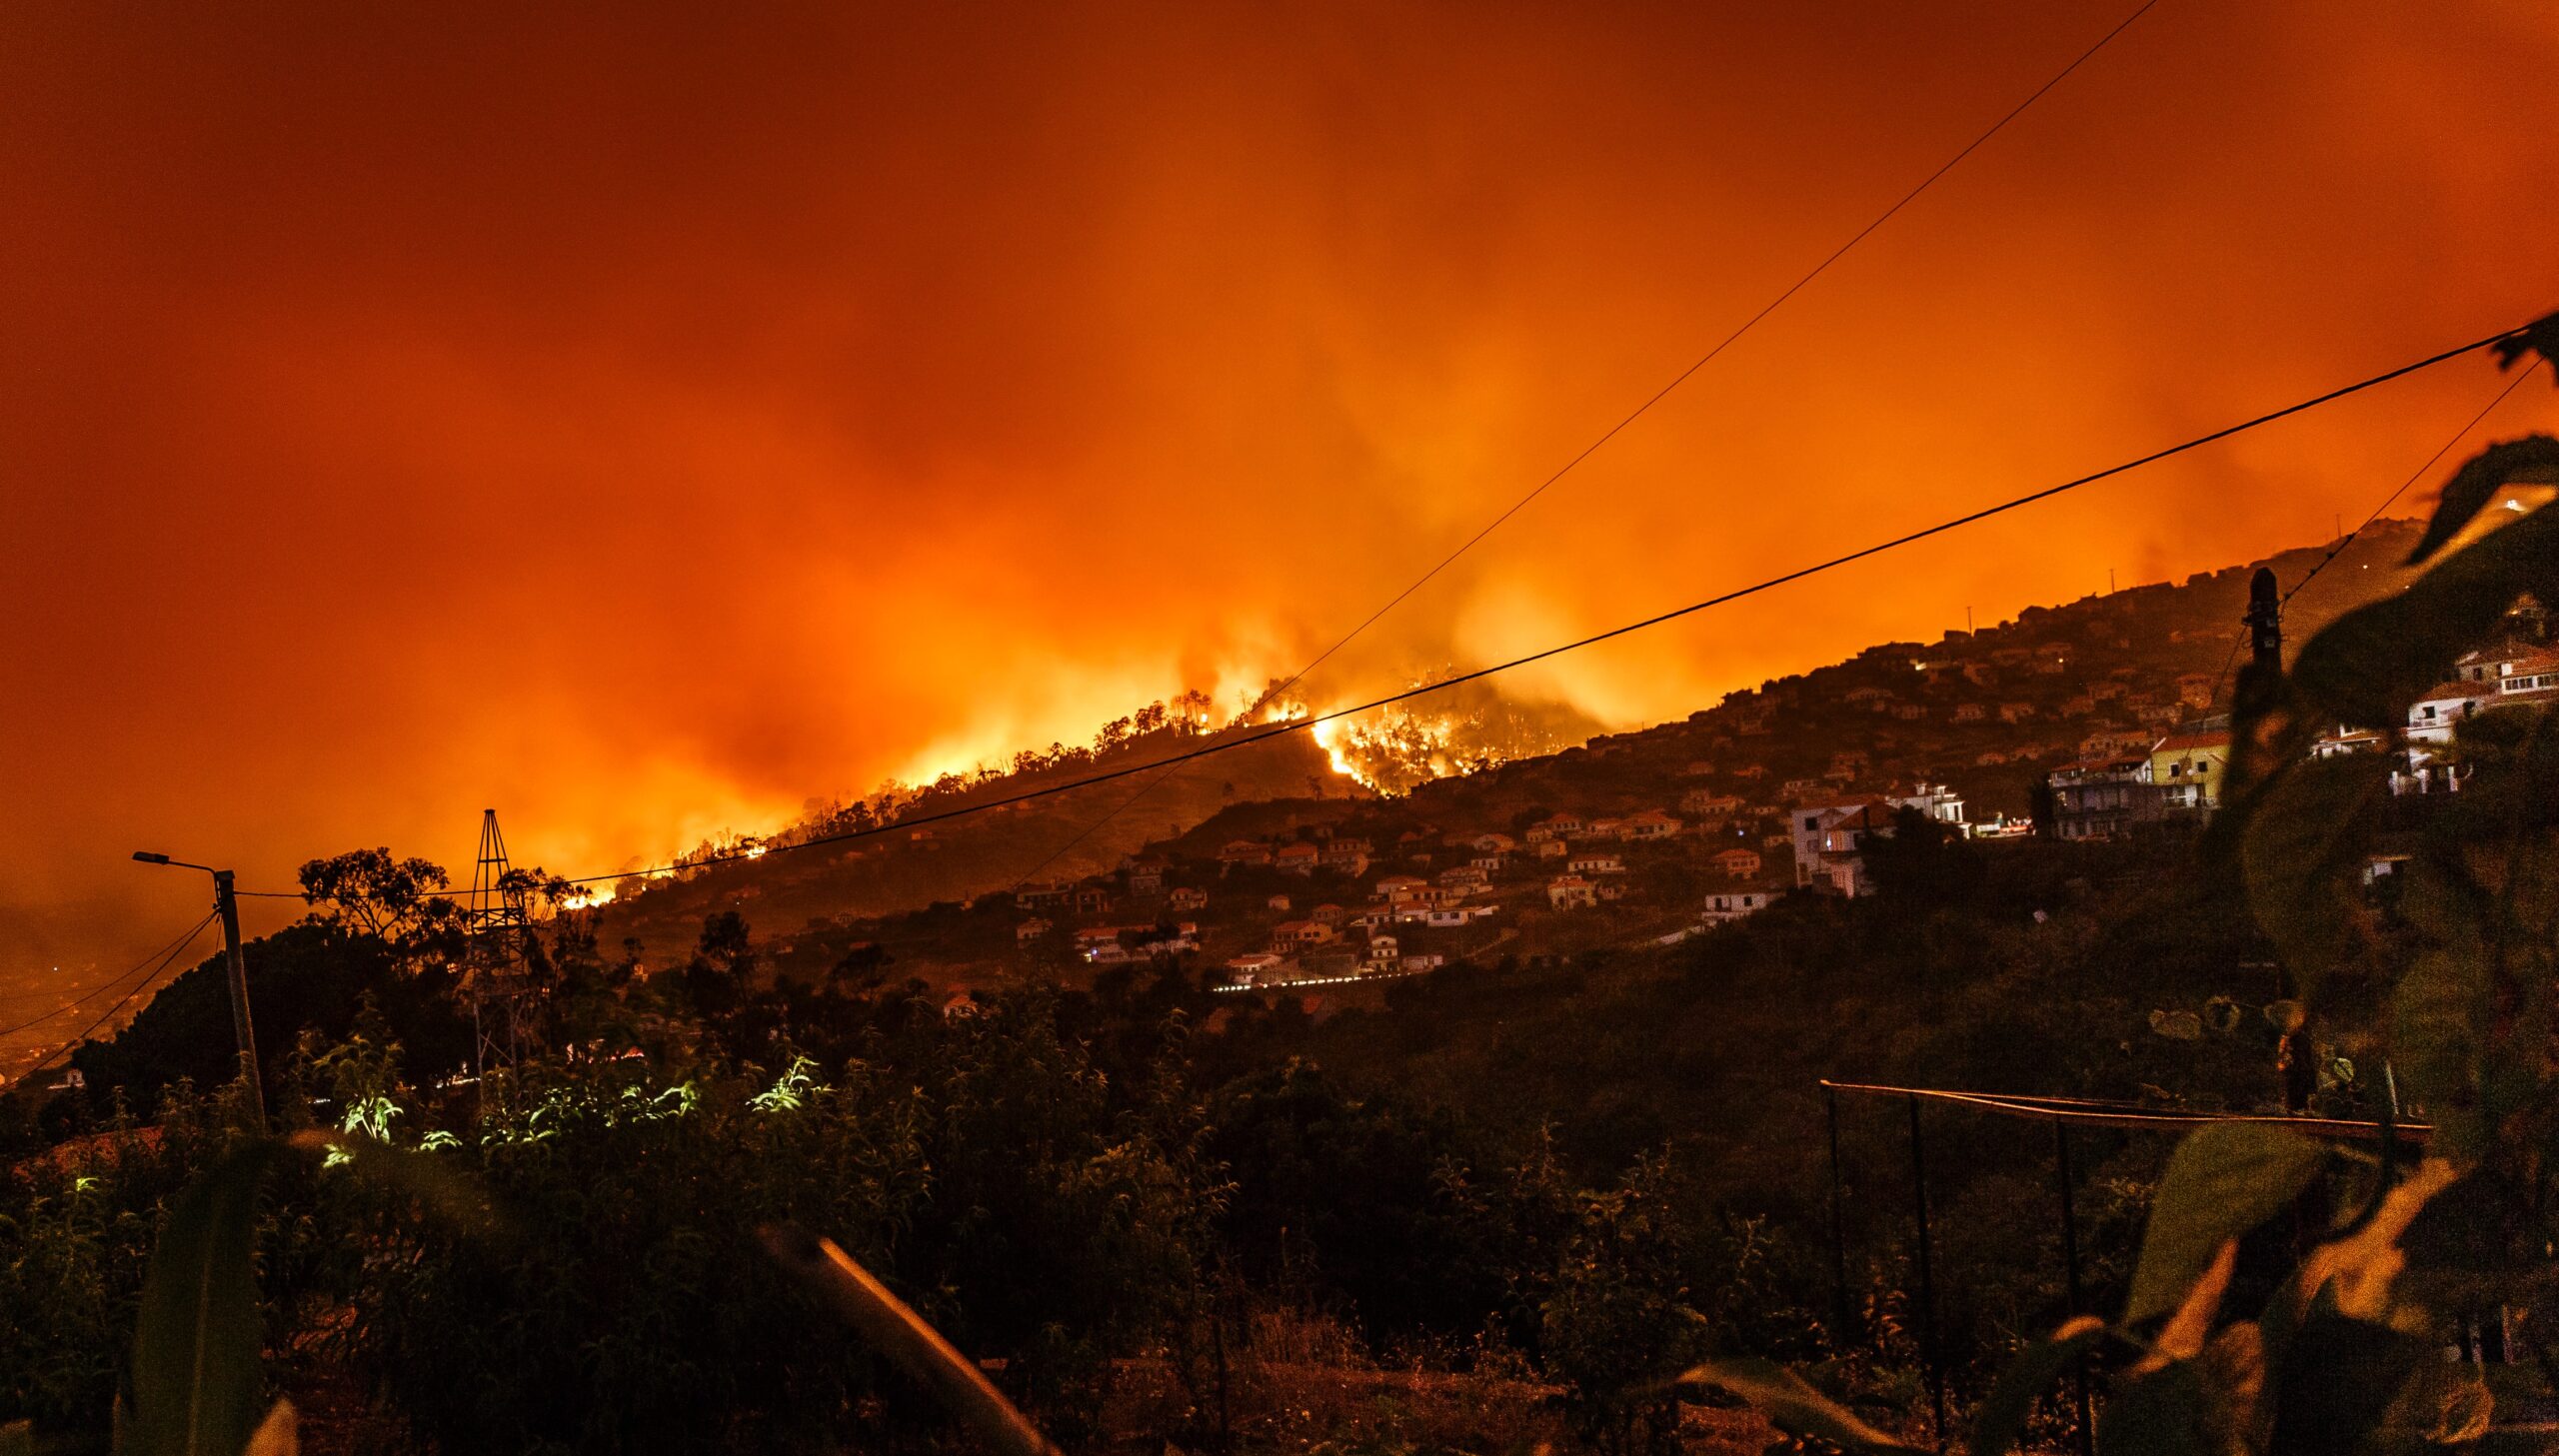 abril, julio y agosto fueron los meses con más emisiones de gases de efecto invernadero registrados como consecuencia de los incendios forestales. Foto de Michael Held para Unsplash